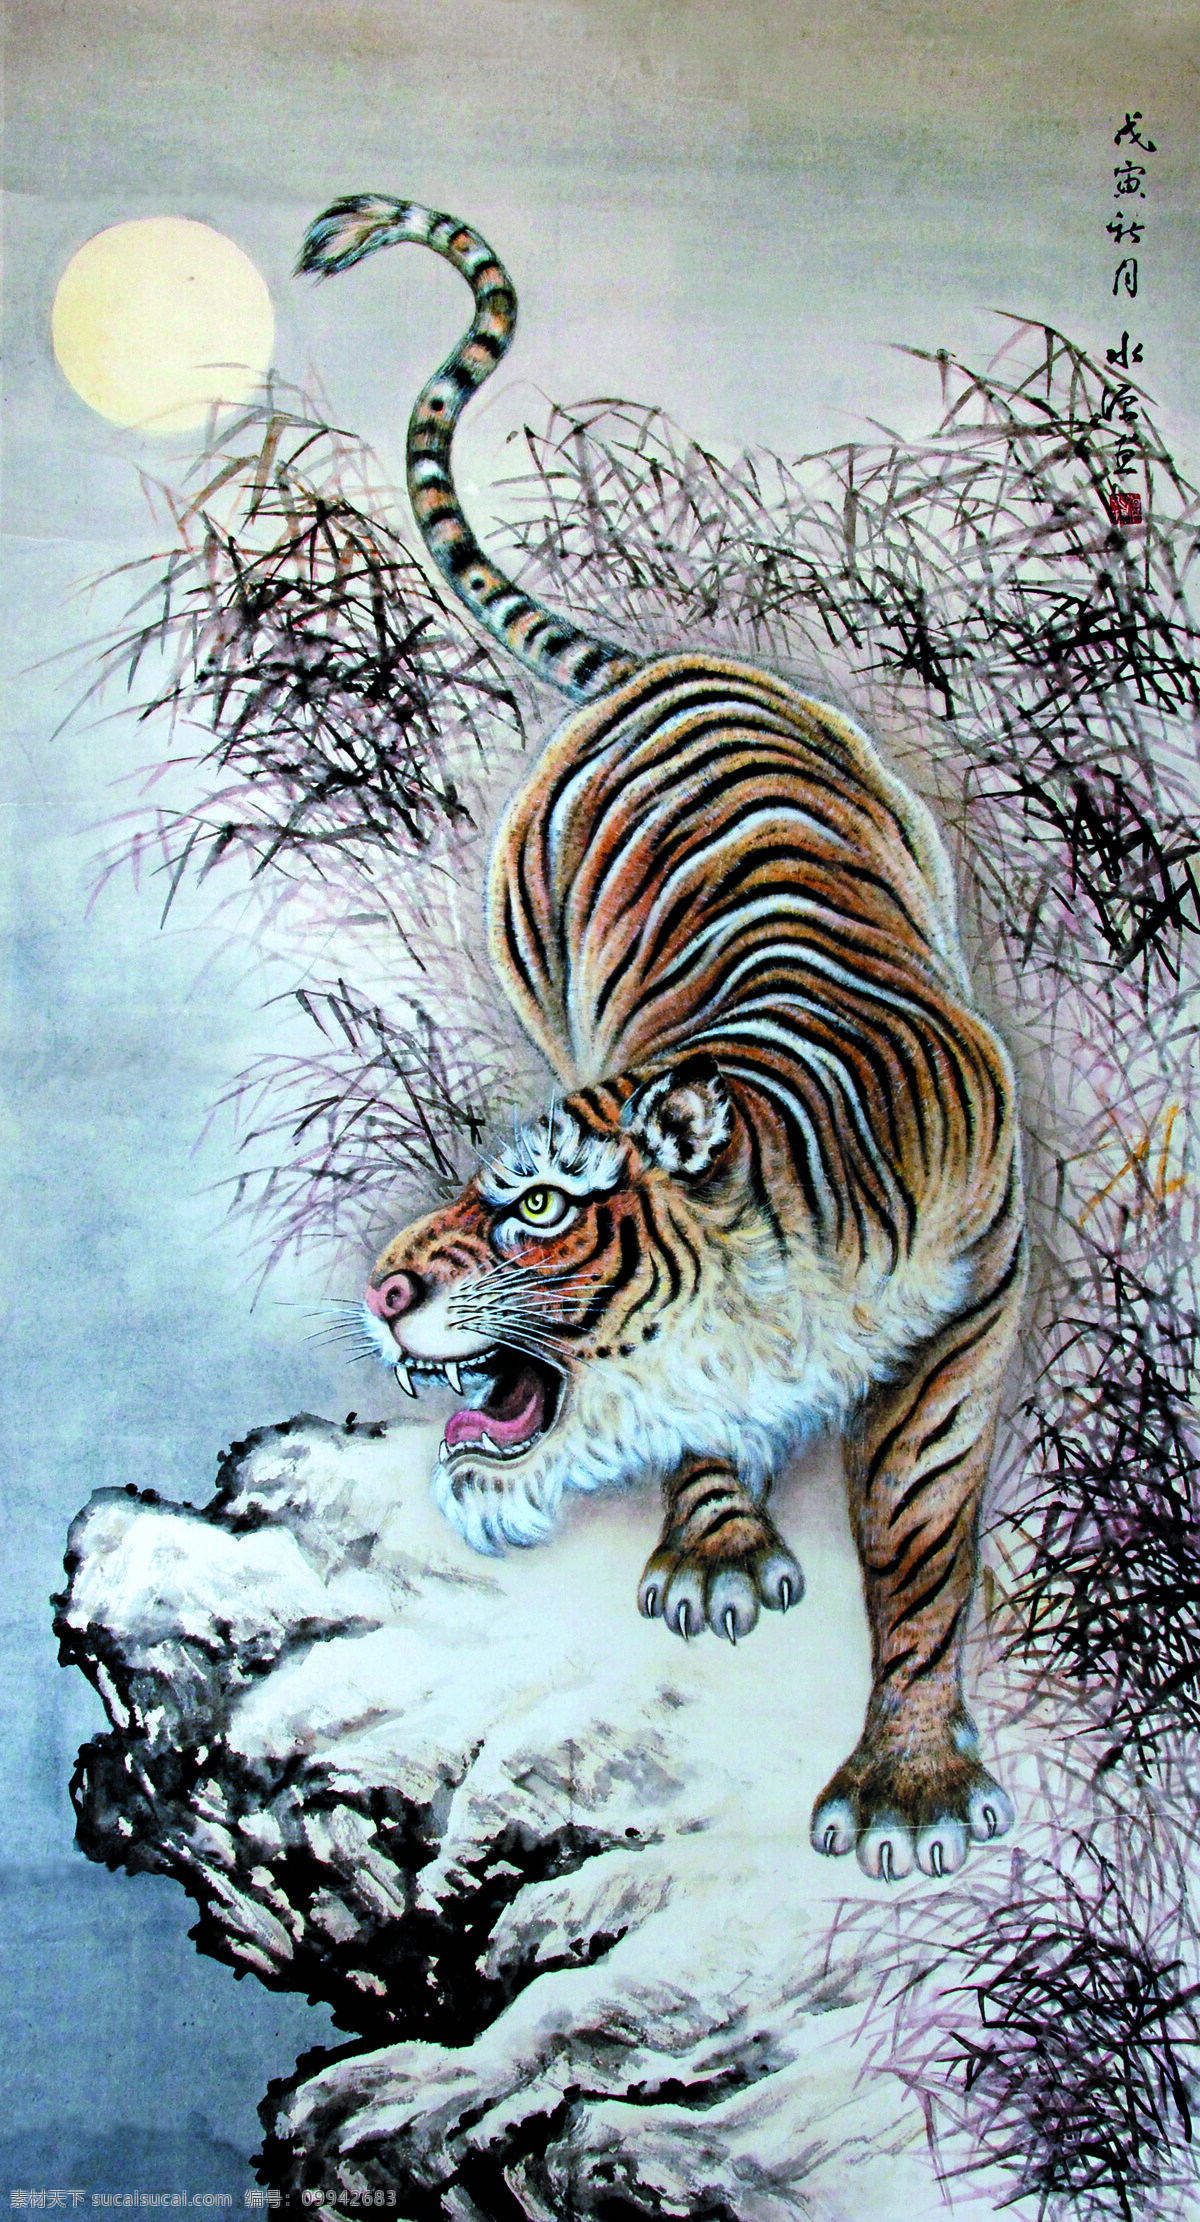 月夜猛虎 美术 中国画 动物画 老虎 猛虎 草野 月亮 文化艺术 绘画书法